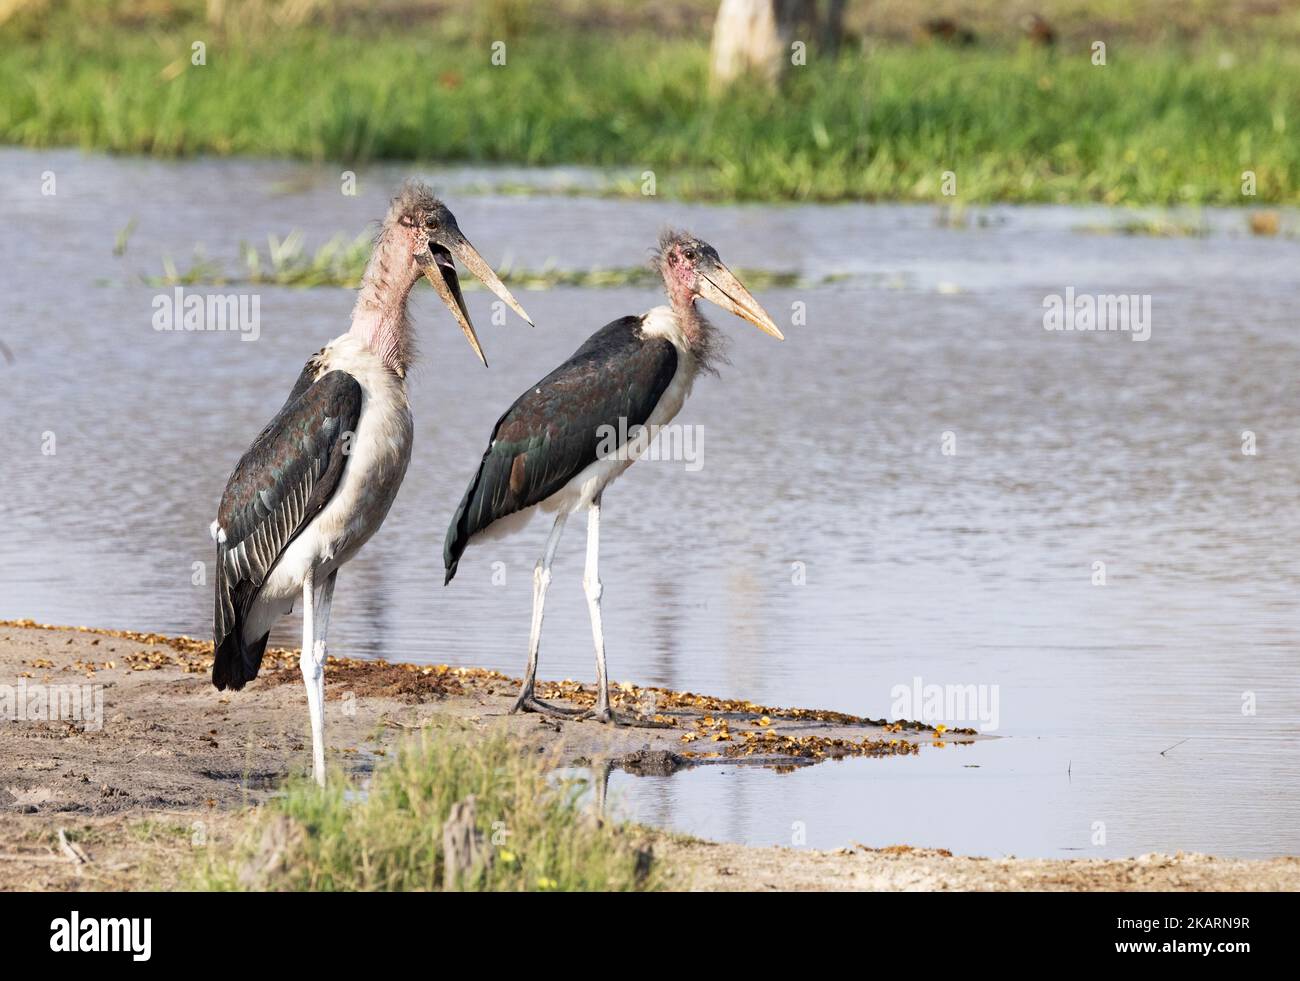 Marabout, Leptoptilos crumenifer. Deux Marabou Storks au bord de l'eau, delta d'Okavango, Botswana Afrique. Oiseaux d'Afrique. Banque D'Images